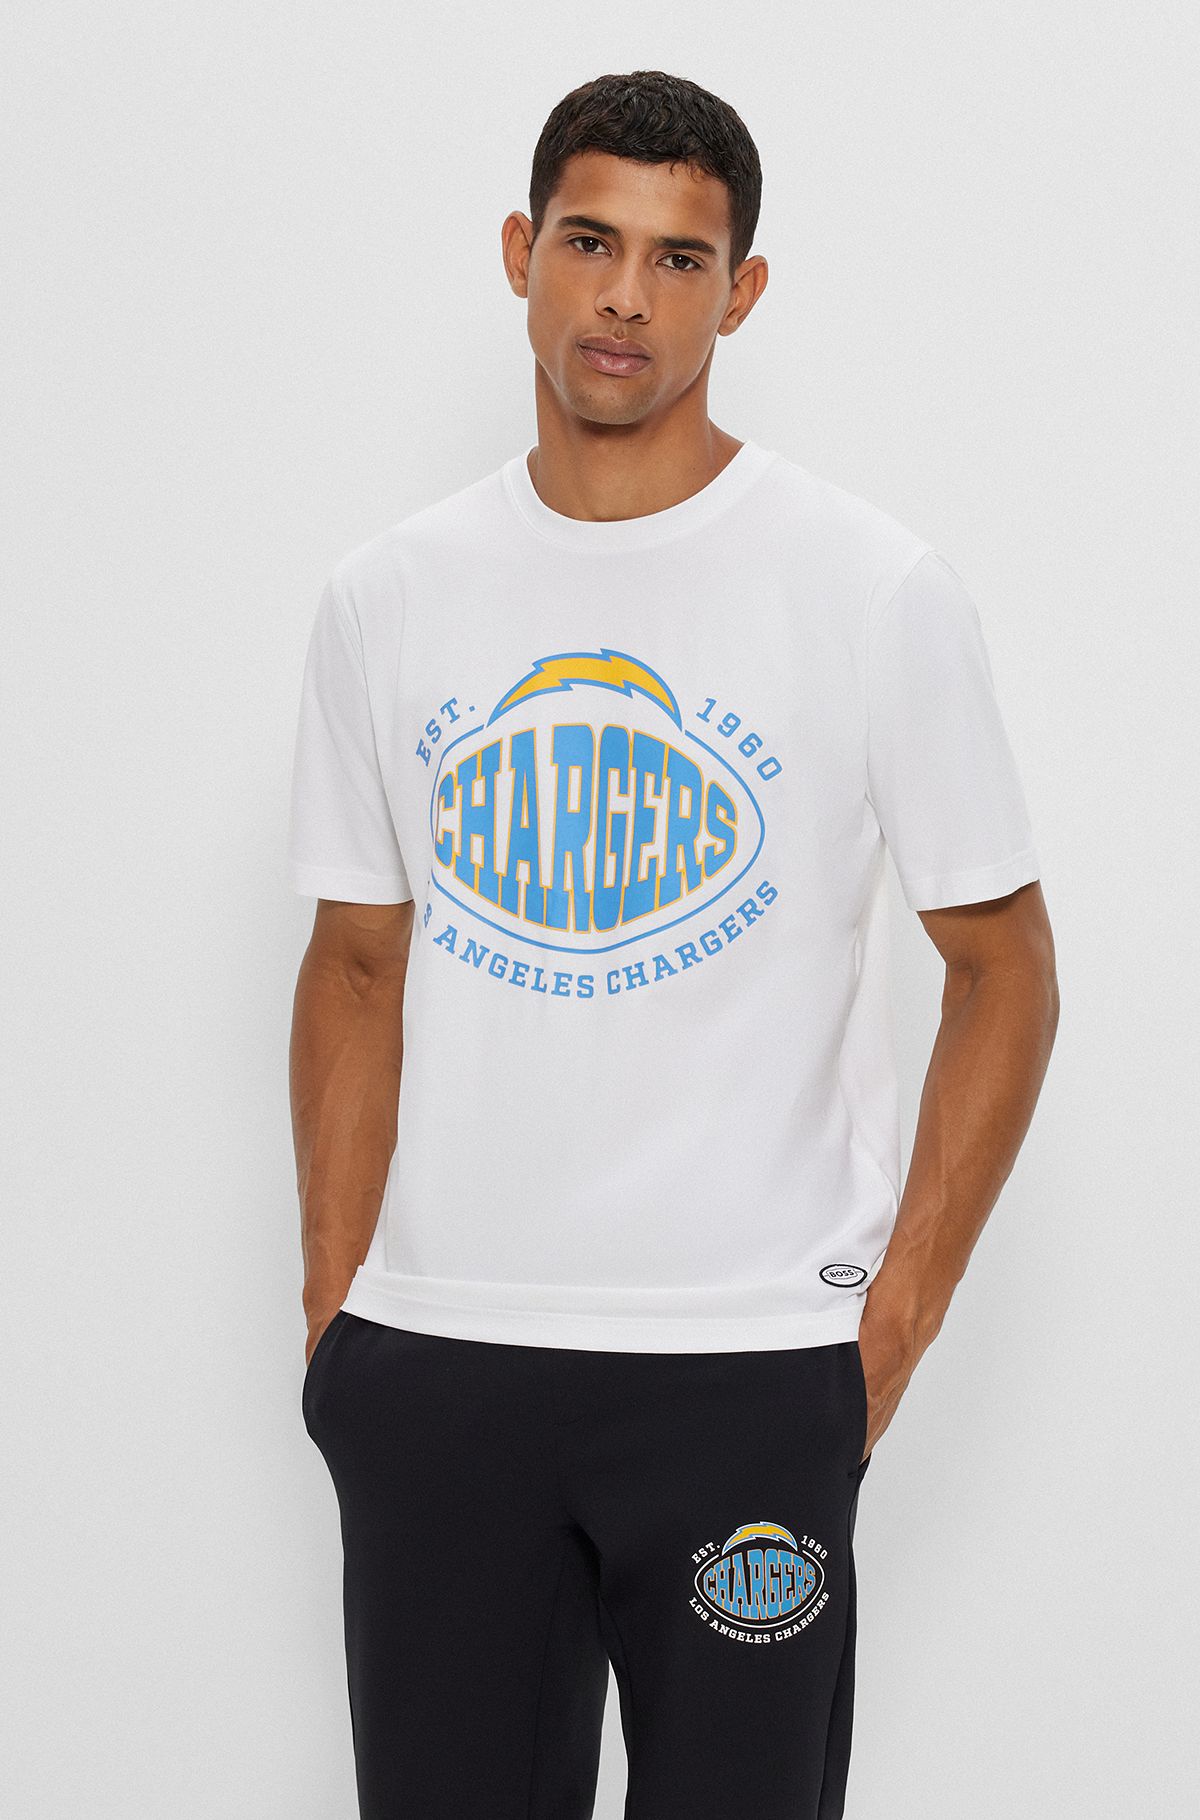  Camiseta de algodón elástico BOSS x NFL con detalle de la colaboración, Chargers